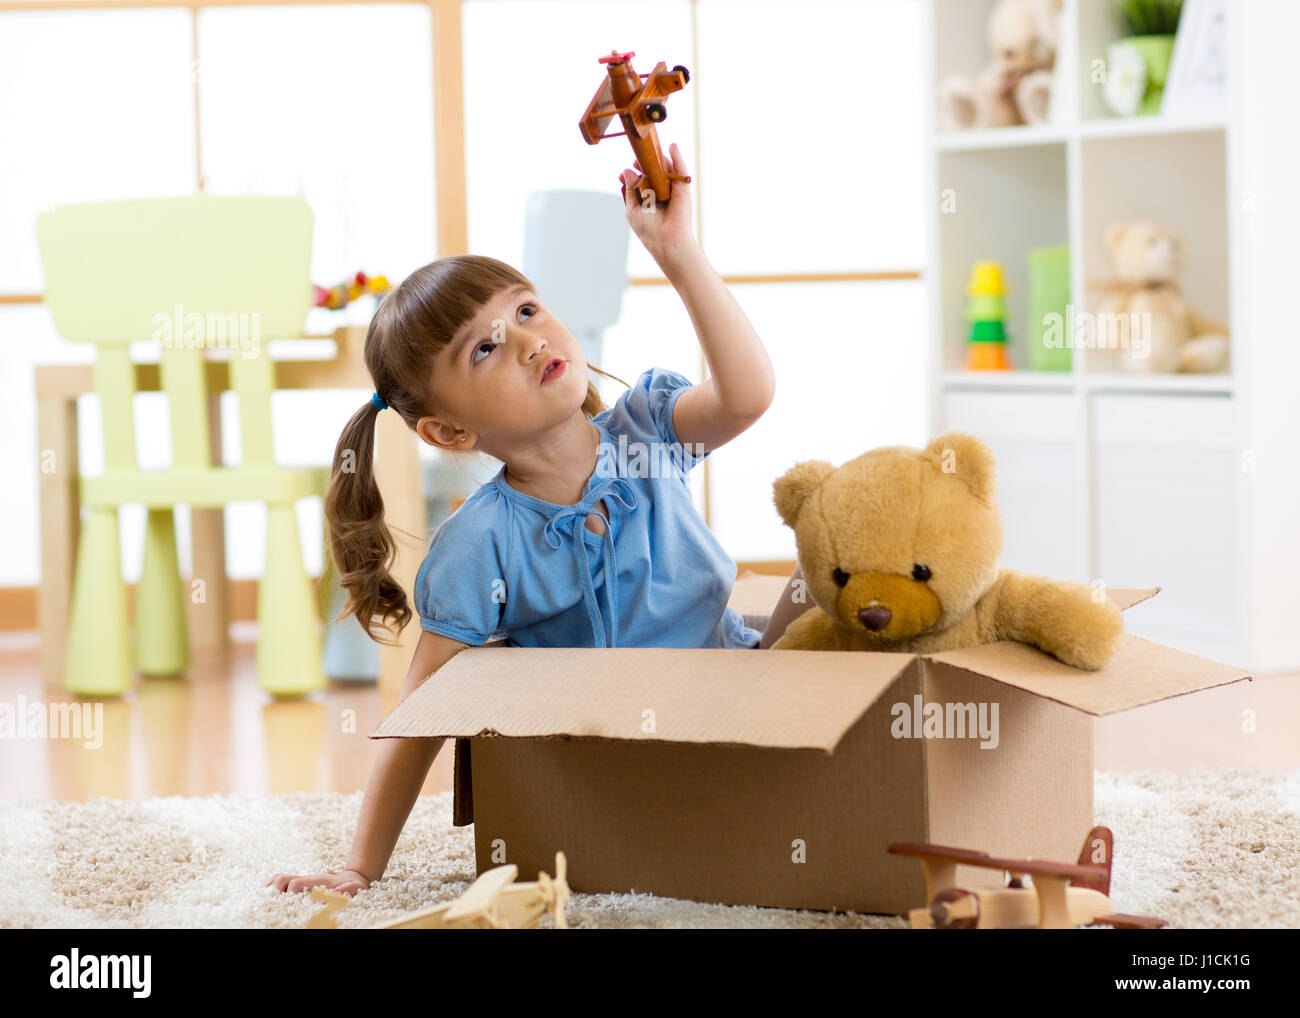 Kind spielt mit dem Flugzeug Spielzeug zu Hause. Reisen, Freiheit und Phantasie Konzept. Stockfoto